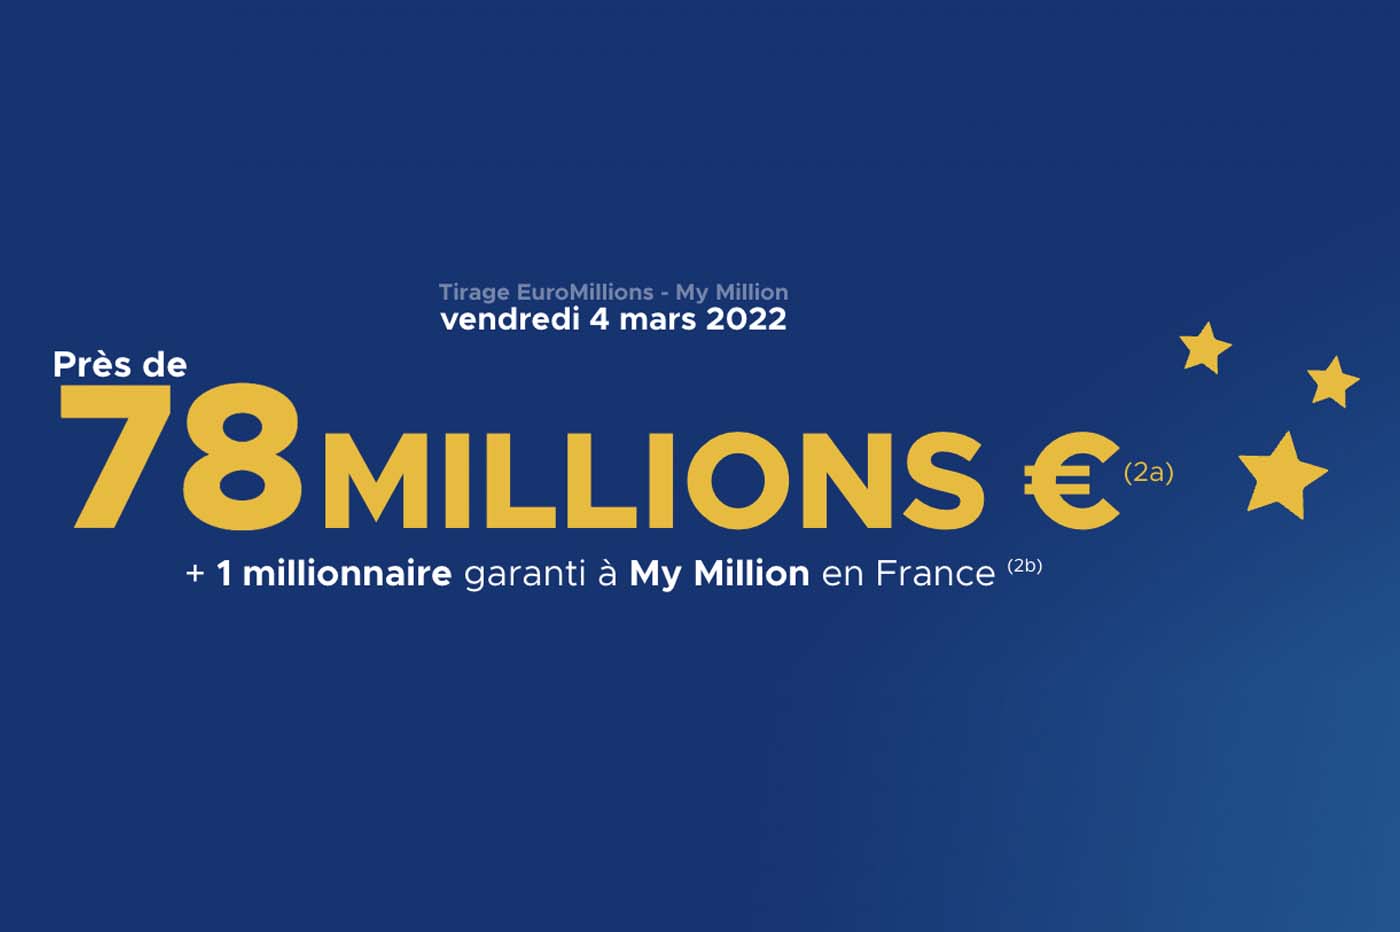 Tirage EuroMillions My Million